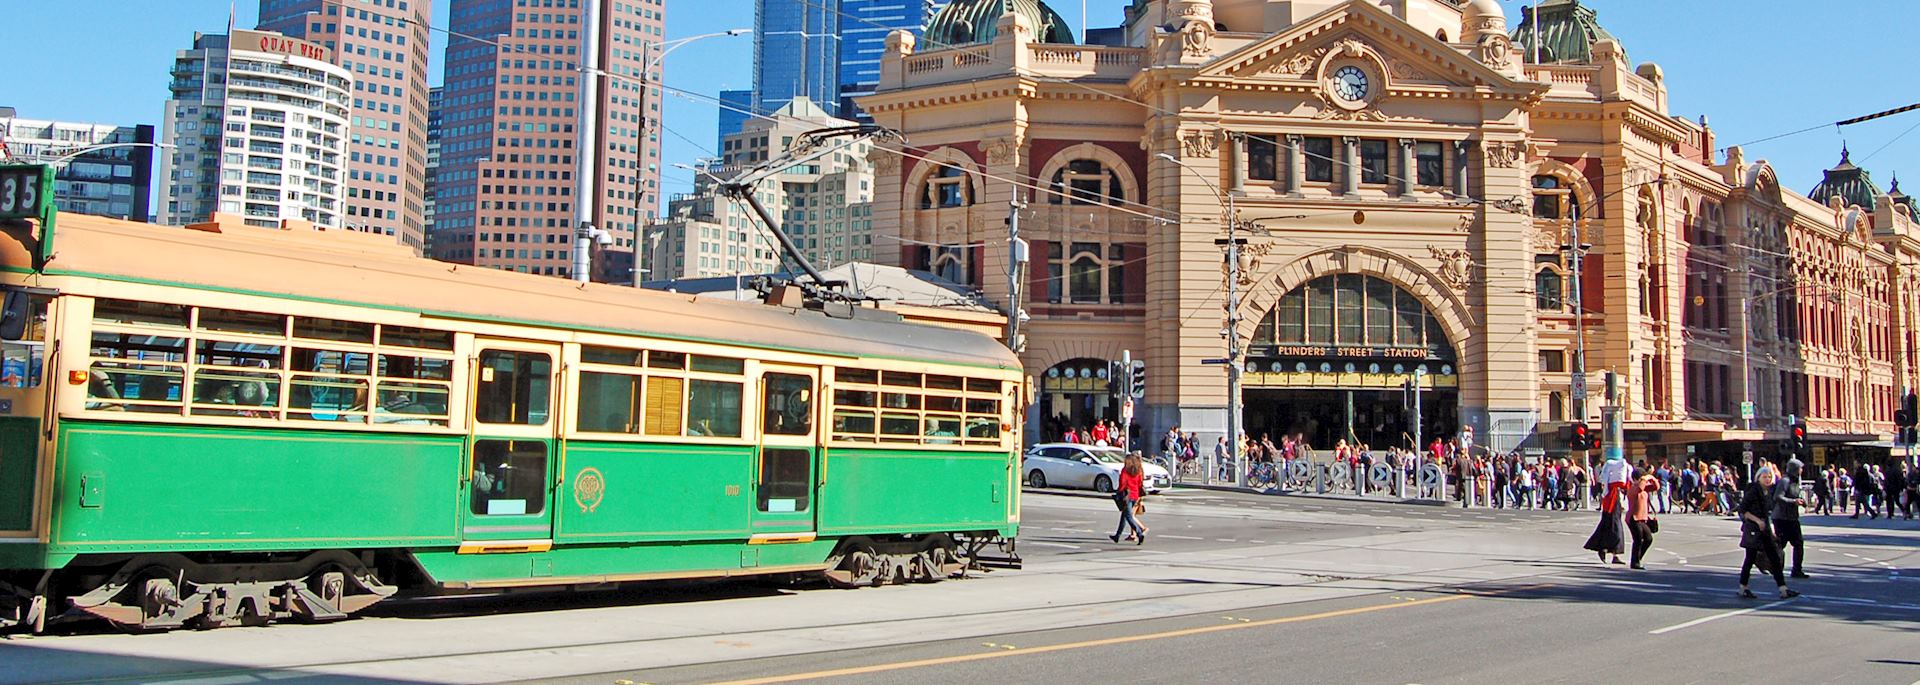 Tram at Flinders Street Station, Melbourne